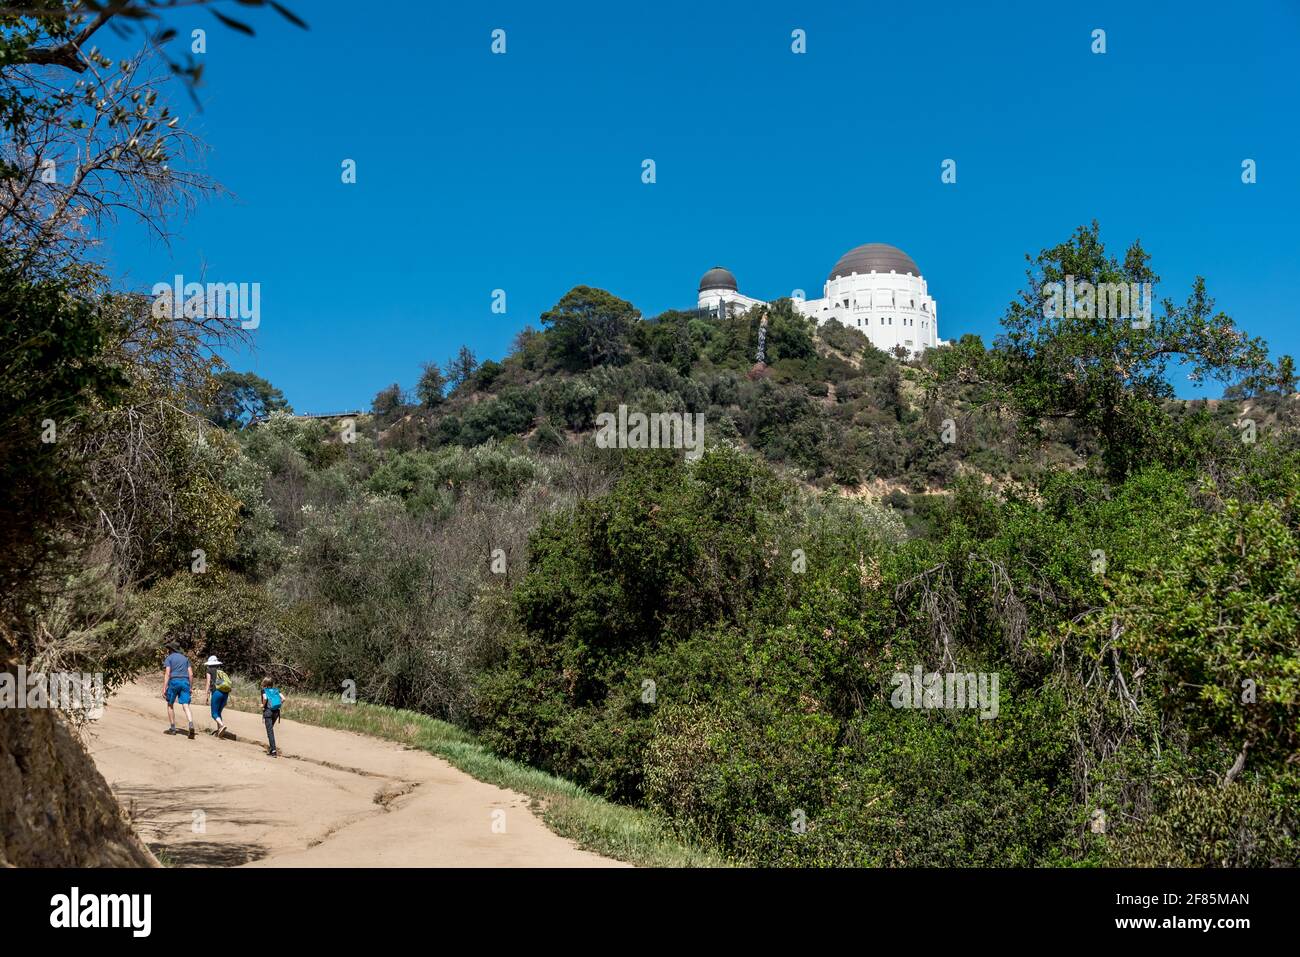 Ein Vater und zwei Kinder wandern an einem wunderschönen Tag in diesem offenen und touristischen Ziel von Los Angeles den Hügel zum Griffith Observatory auf dem West Trail hinauf. Stockfoto